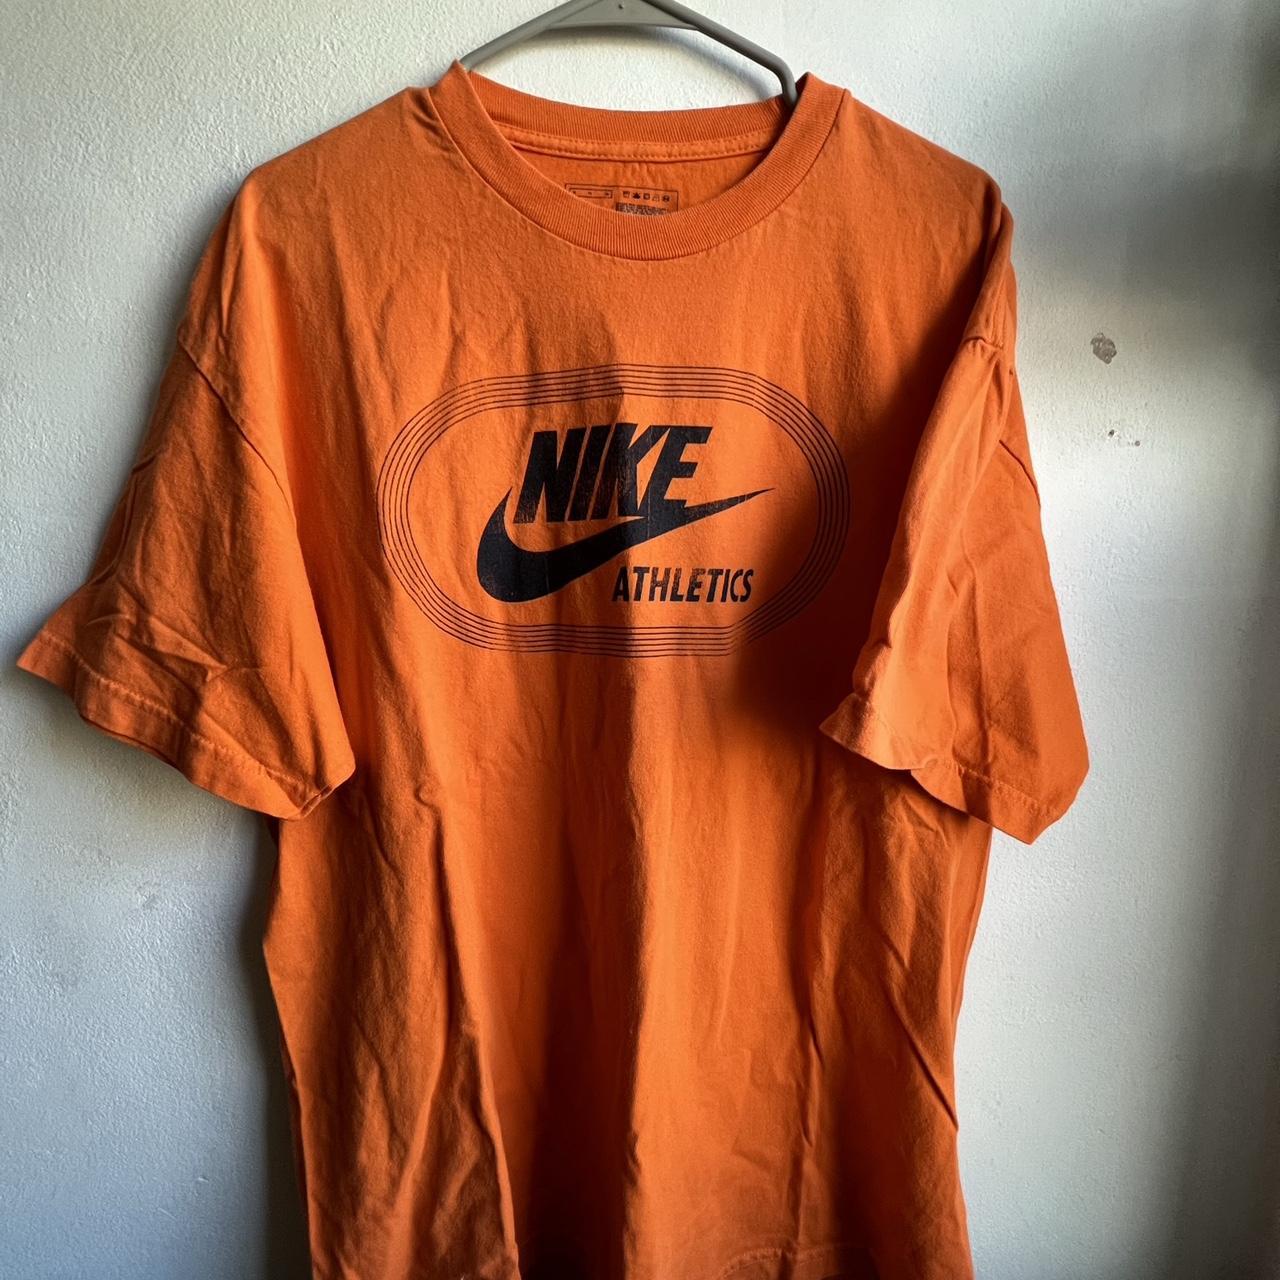 Nike, Shirts, Vintage Nike Athletics Tshirt